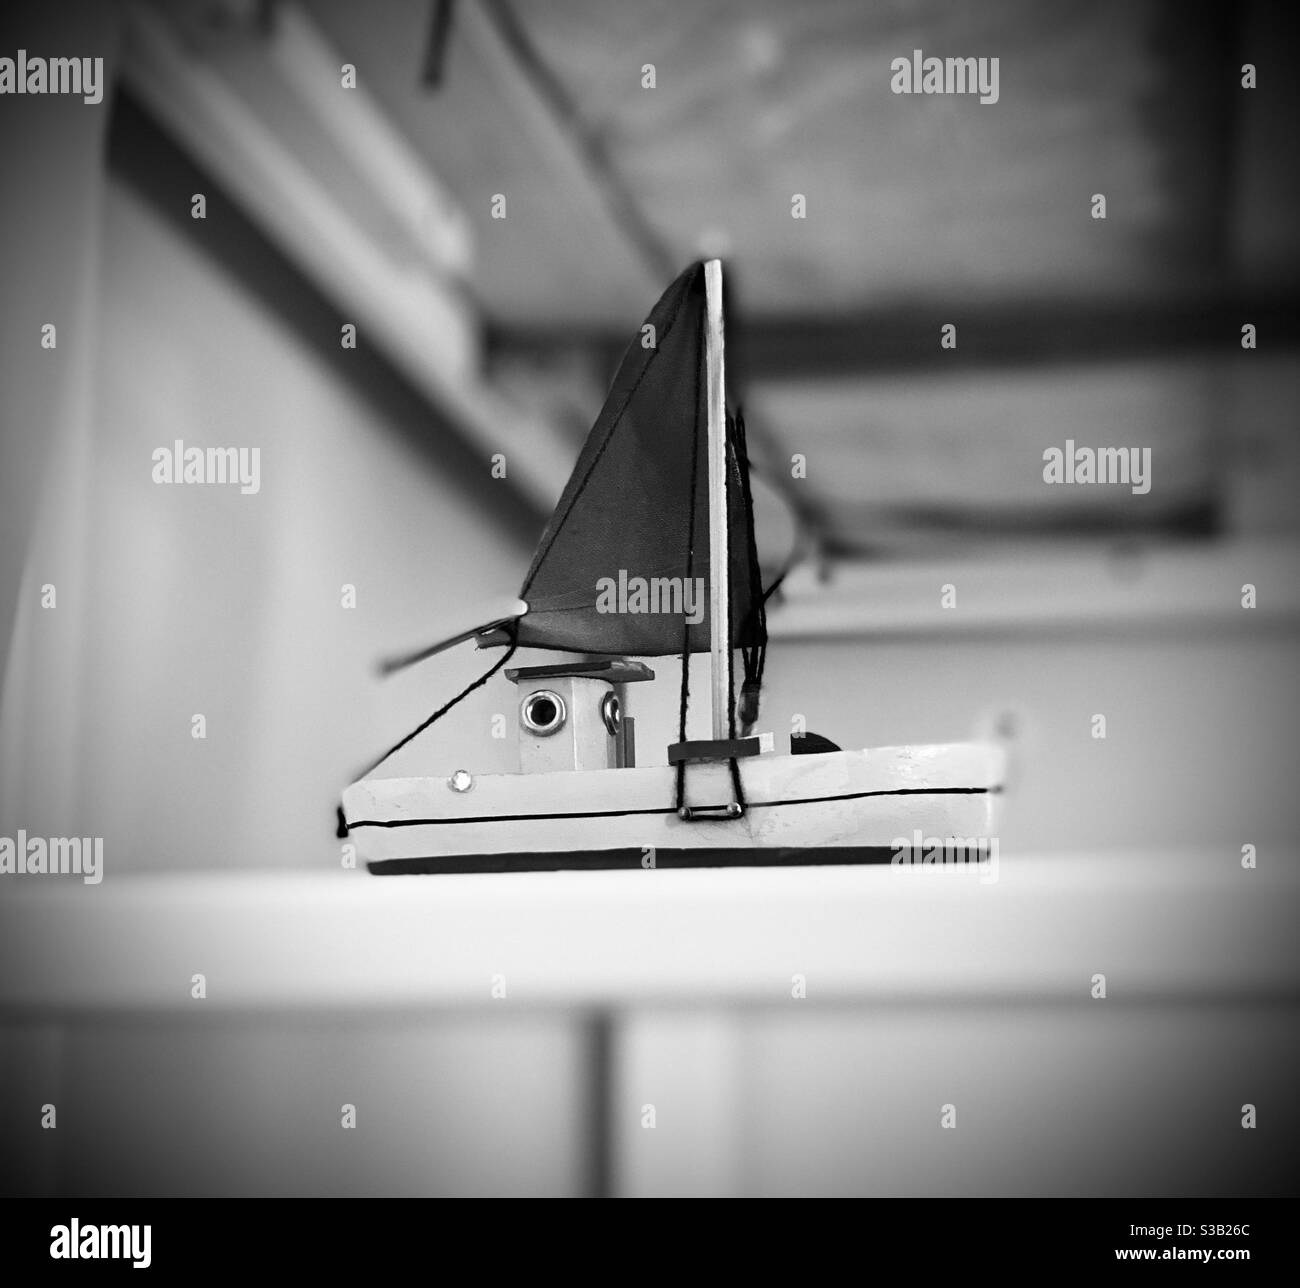 Imbarcazione giocattolo in legno e tessuto su una barra in una stanza bianca in nero e bianco con vignetta. Foto Stock